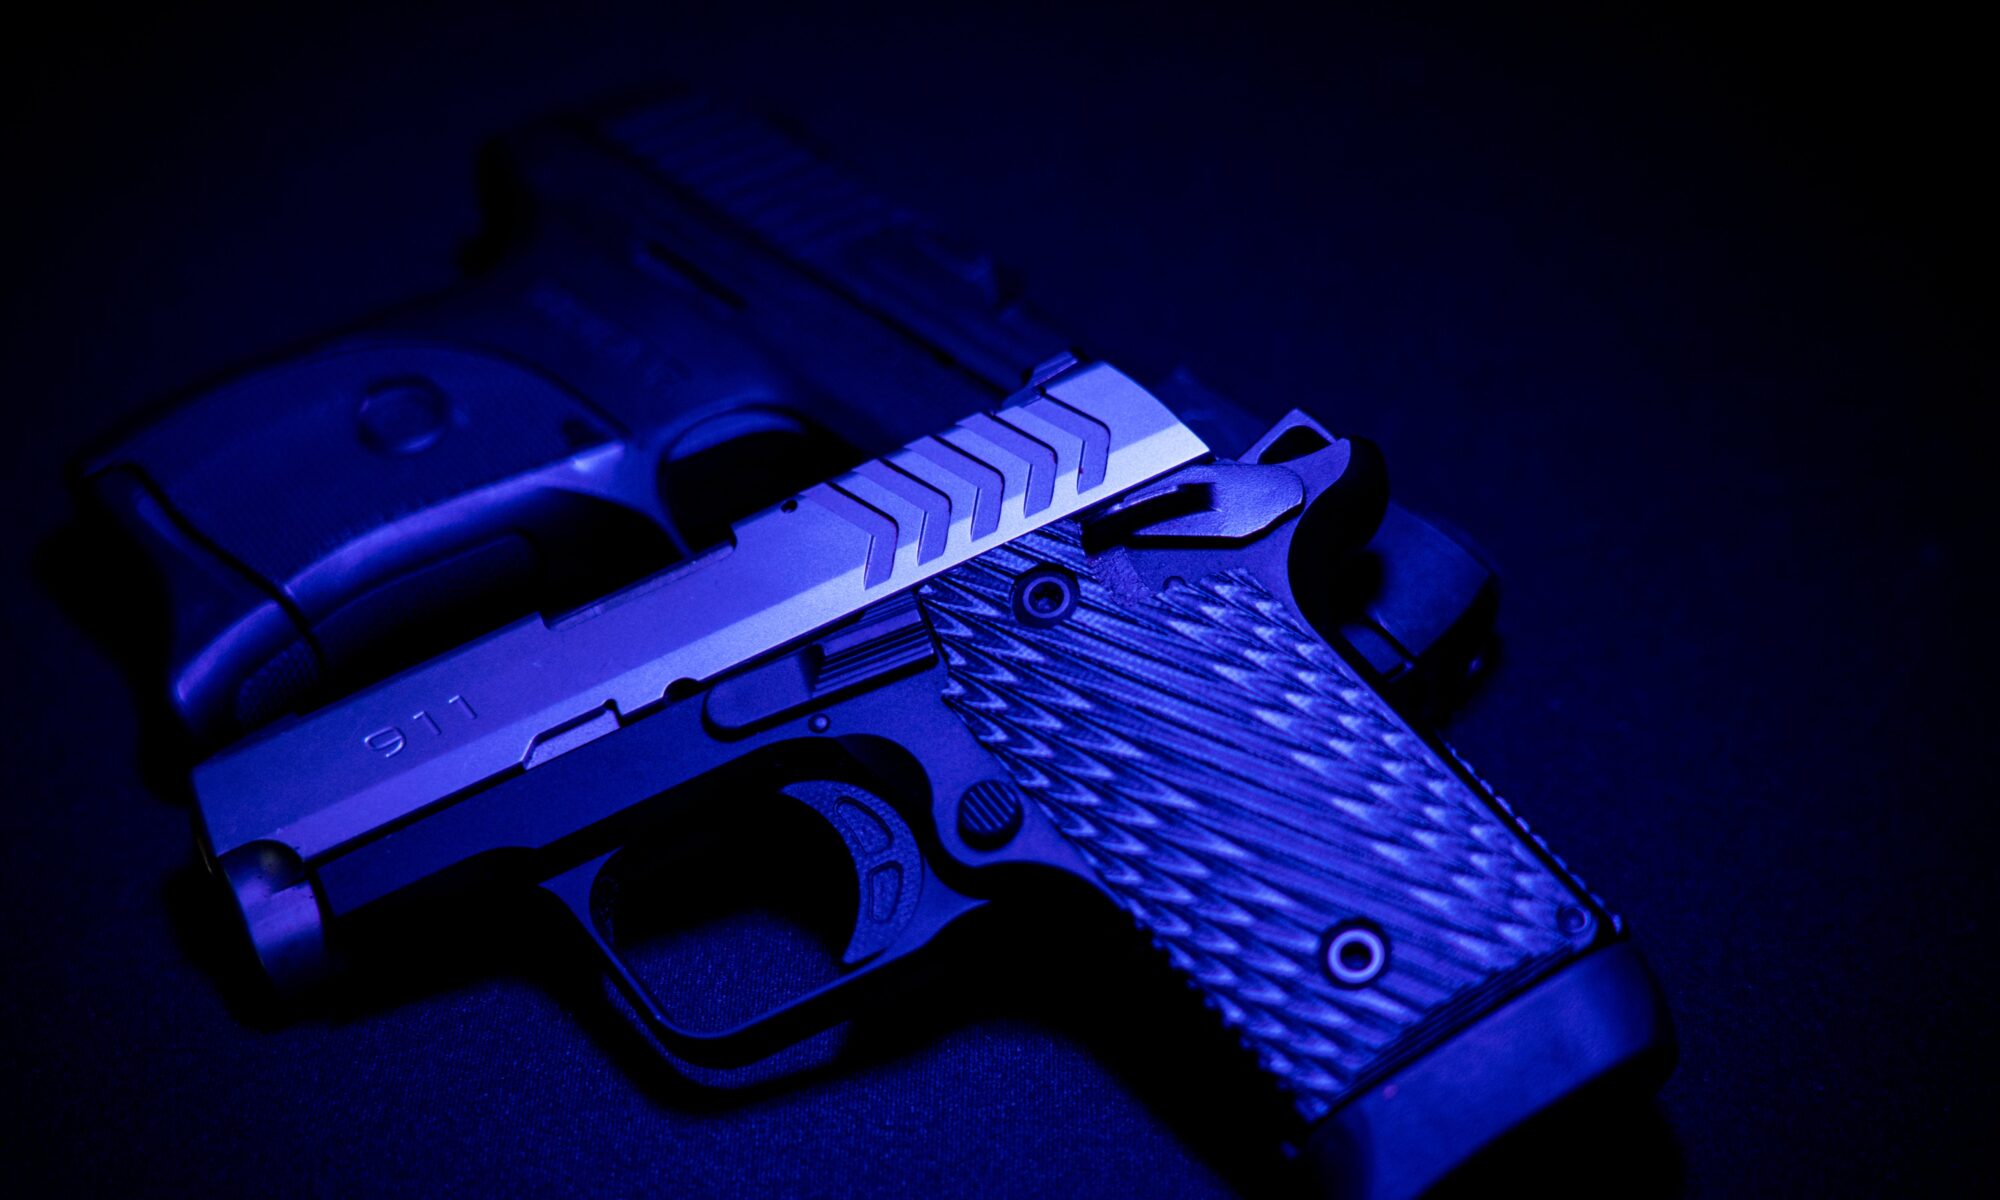 handgun in blue light